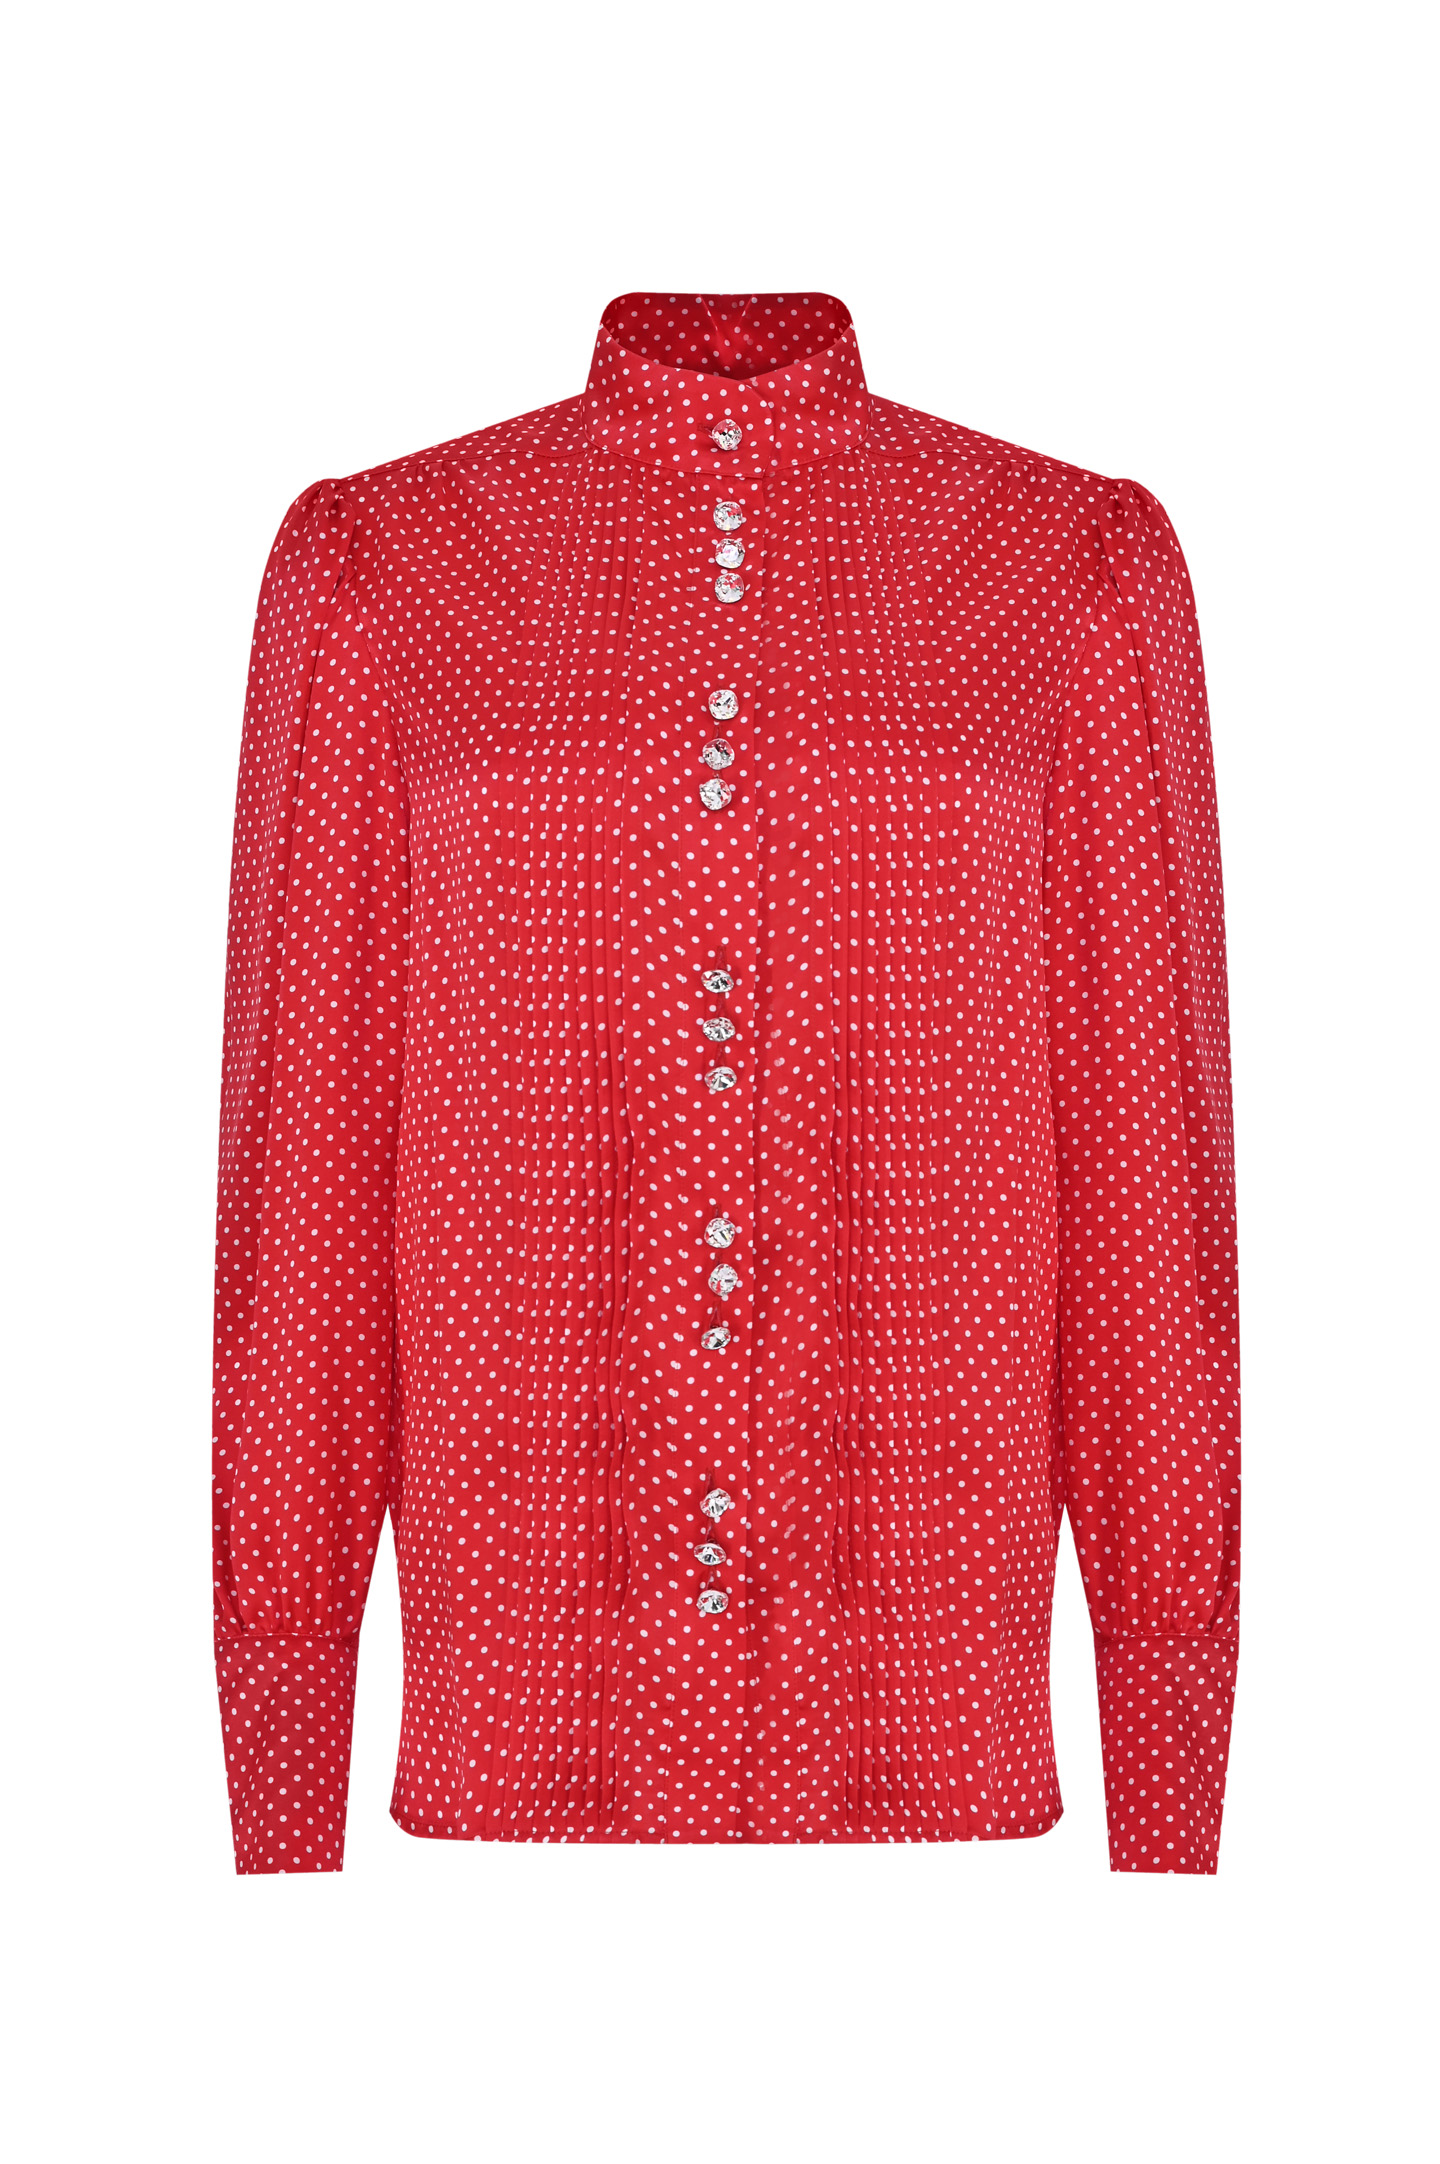 Блуза ALEXANDRE VAUTHIER 231SH1800 1808, цвет: Красный, Женский